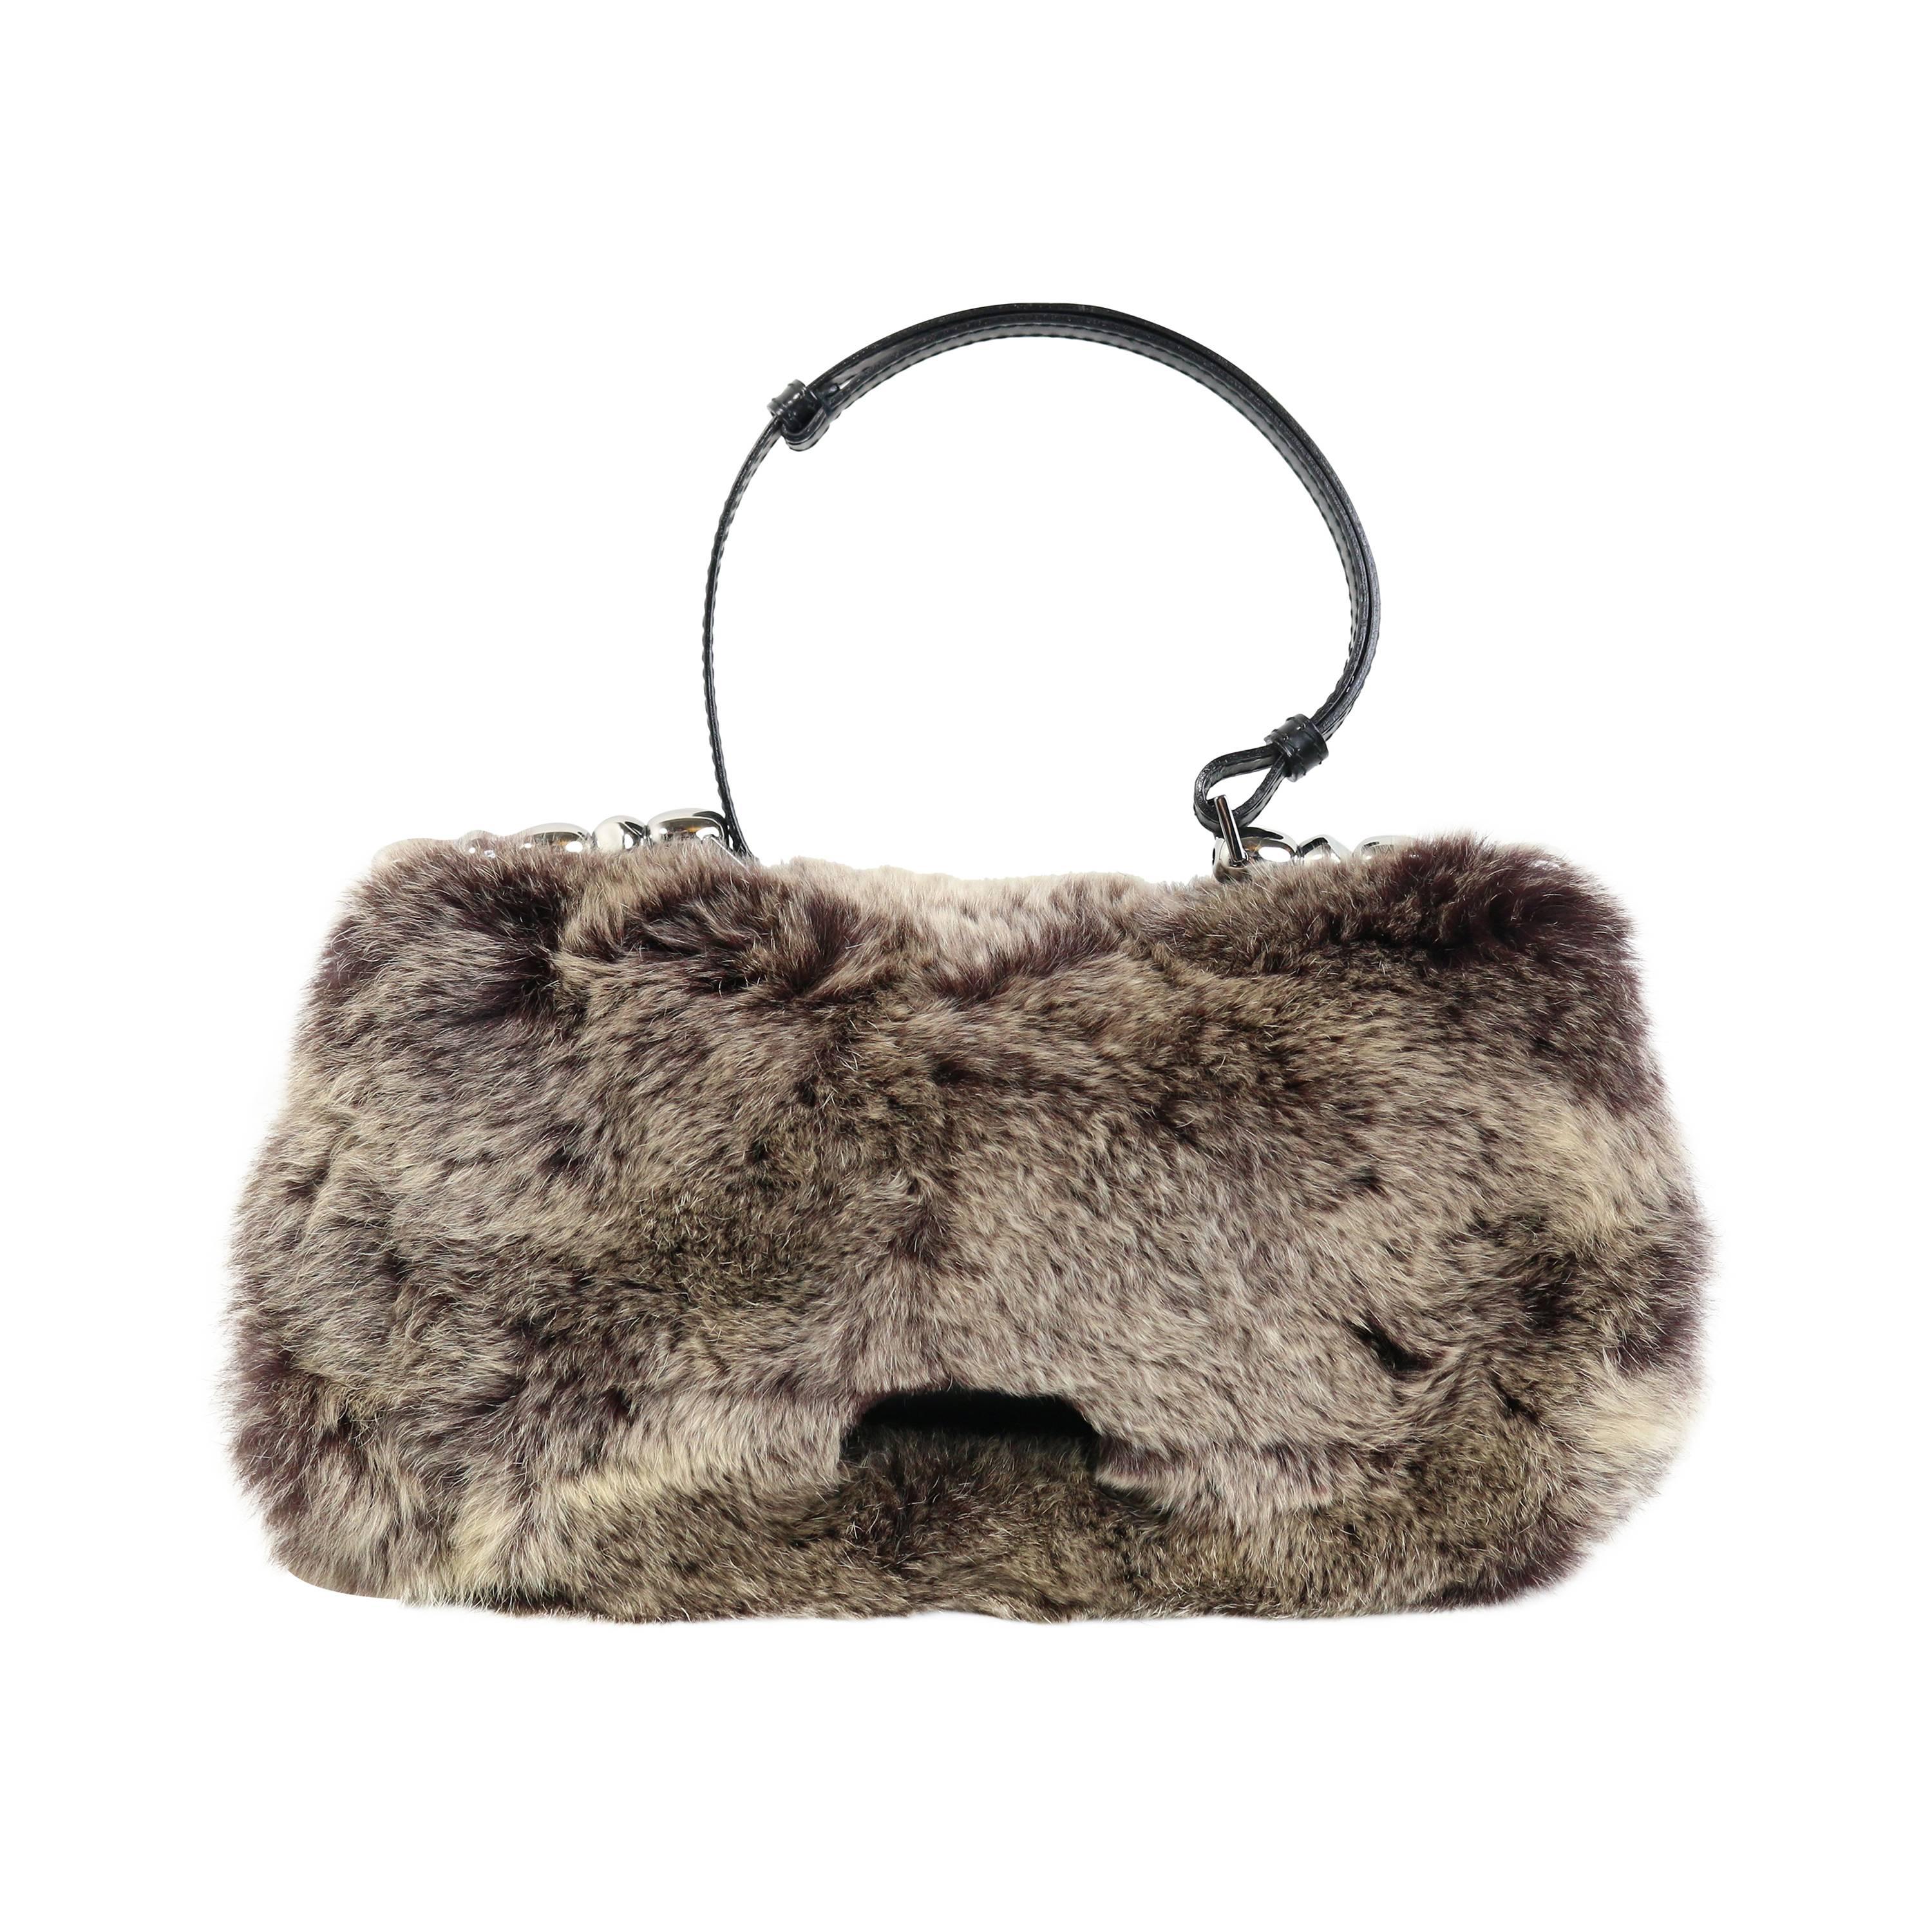 John Galliano Christian Dior Rabbit Fur Saddle Hobo Bag (Limited Edition)